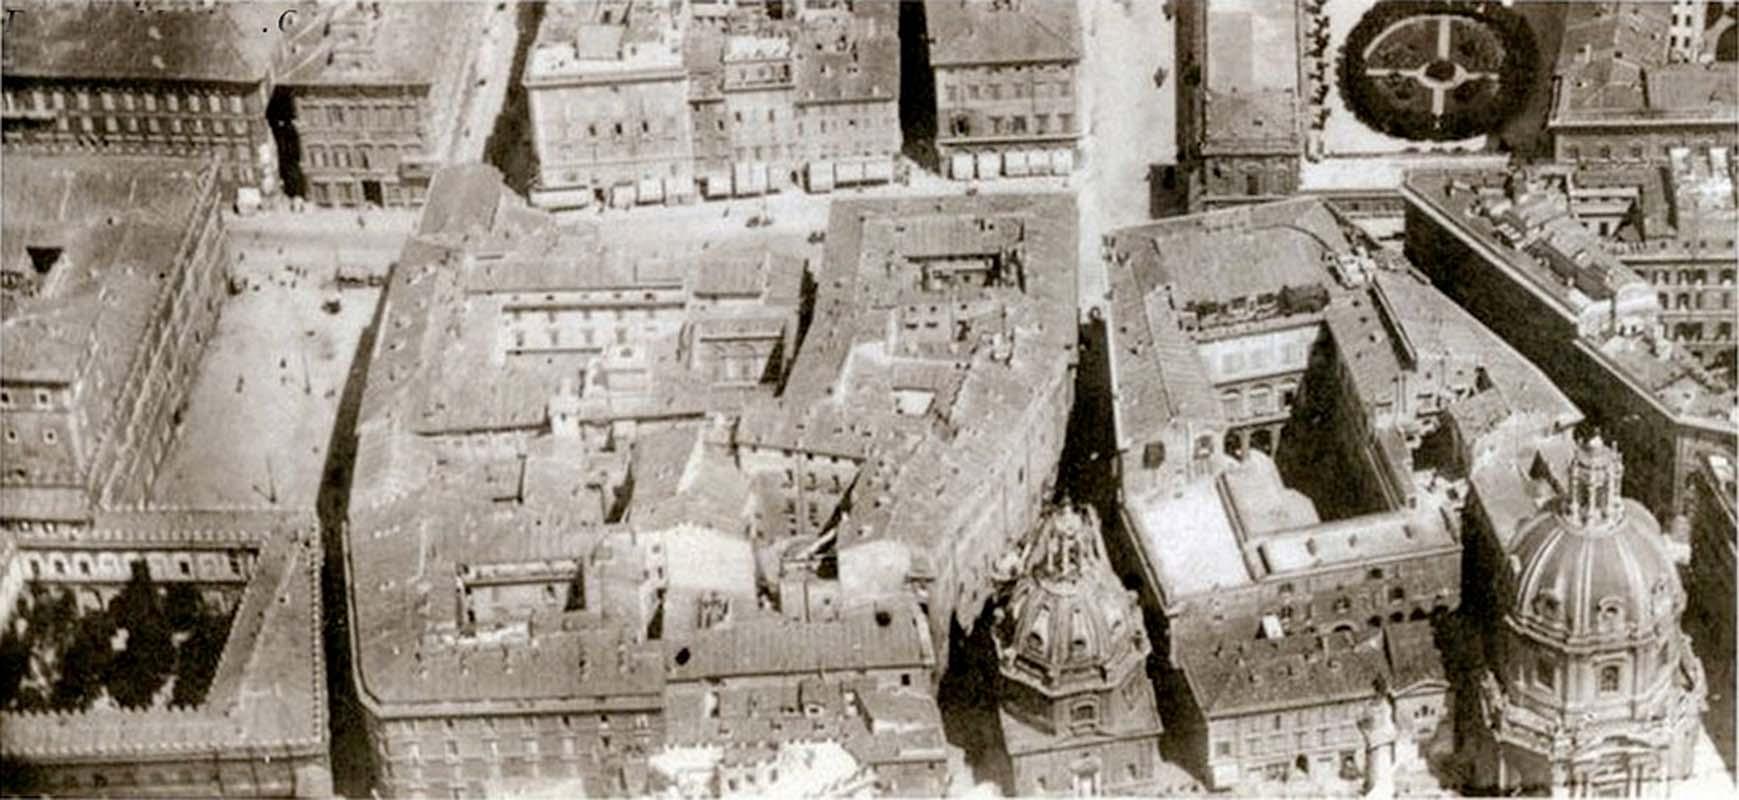 Veduta dall'alto dell'area di piazza Venezia con in basso il Palazzetto Venezia (a sinistra) e di fronte il demolito Palazzo Bolognetti-Torlonia nel 1860 circa
